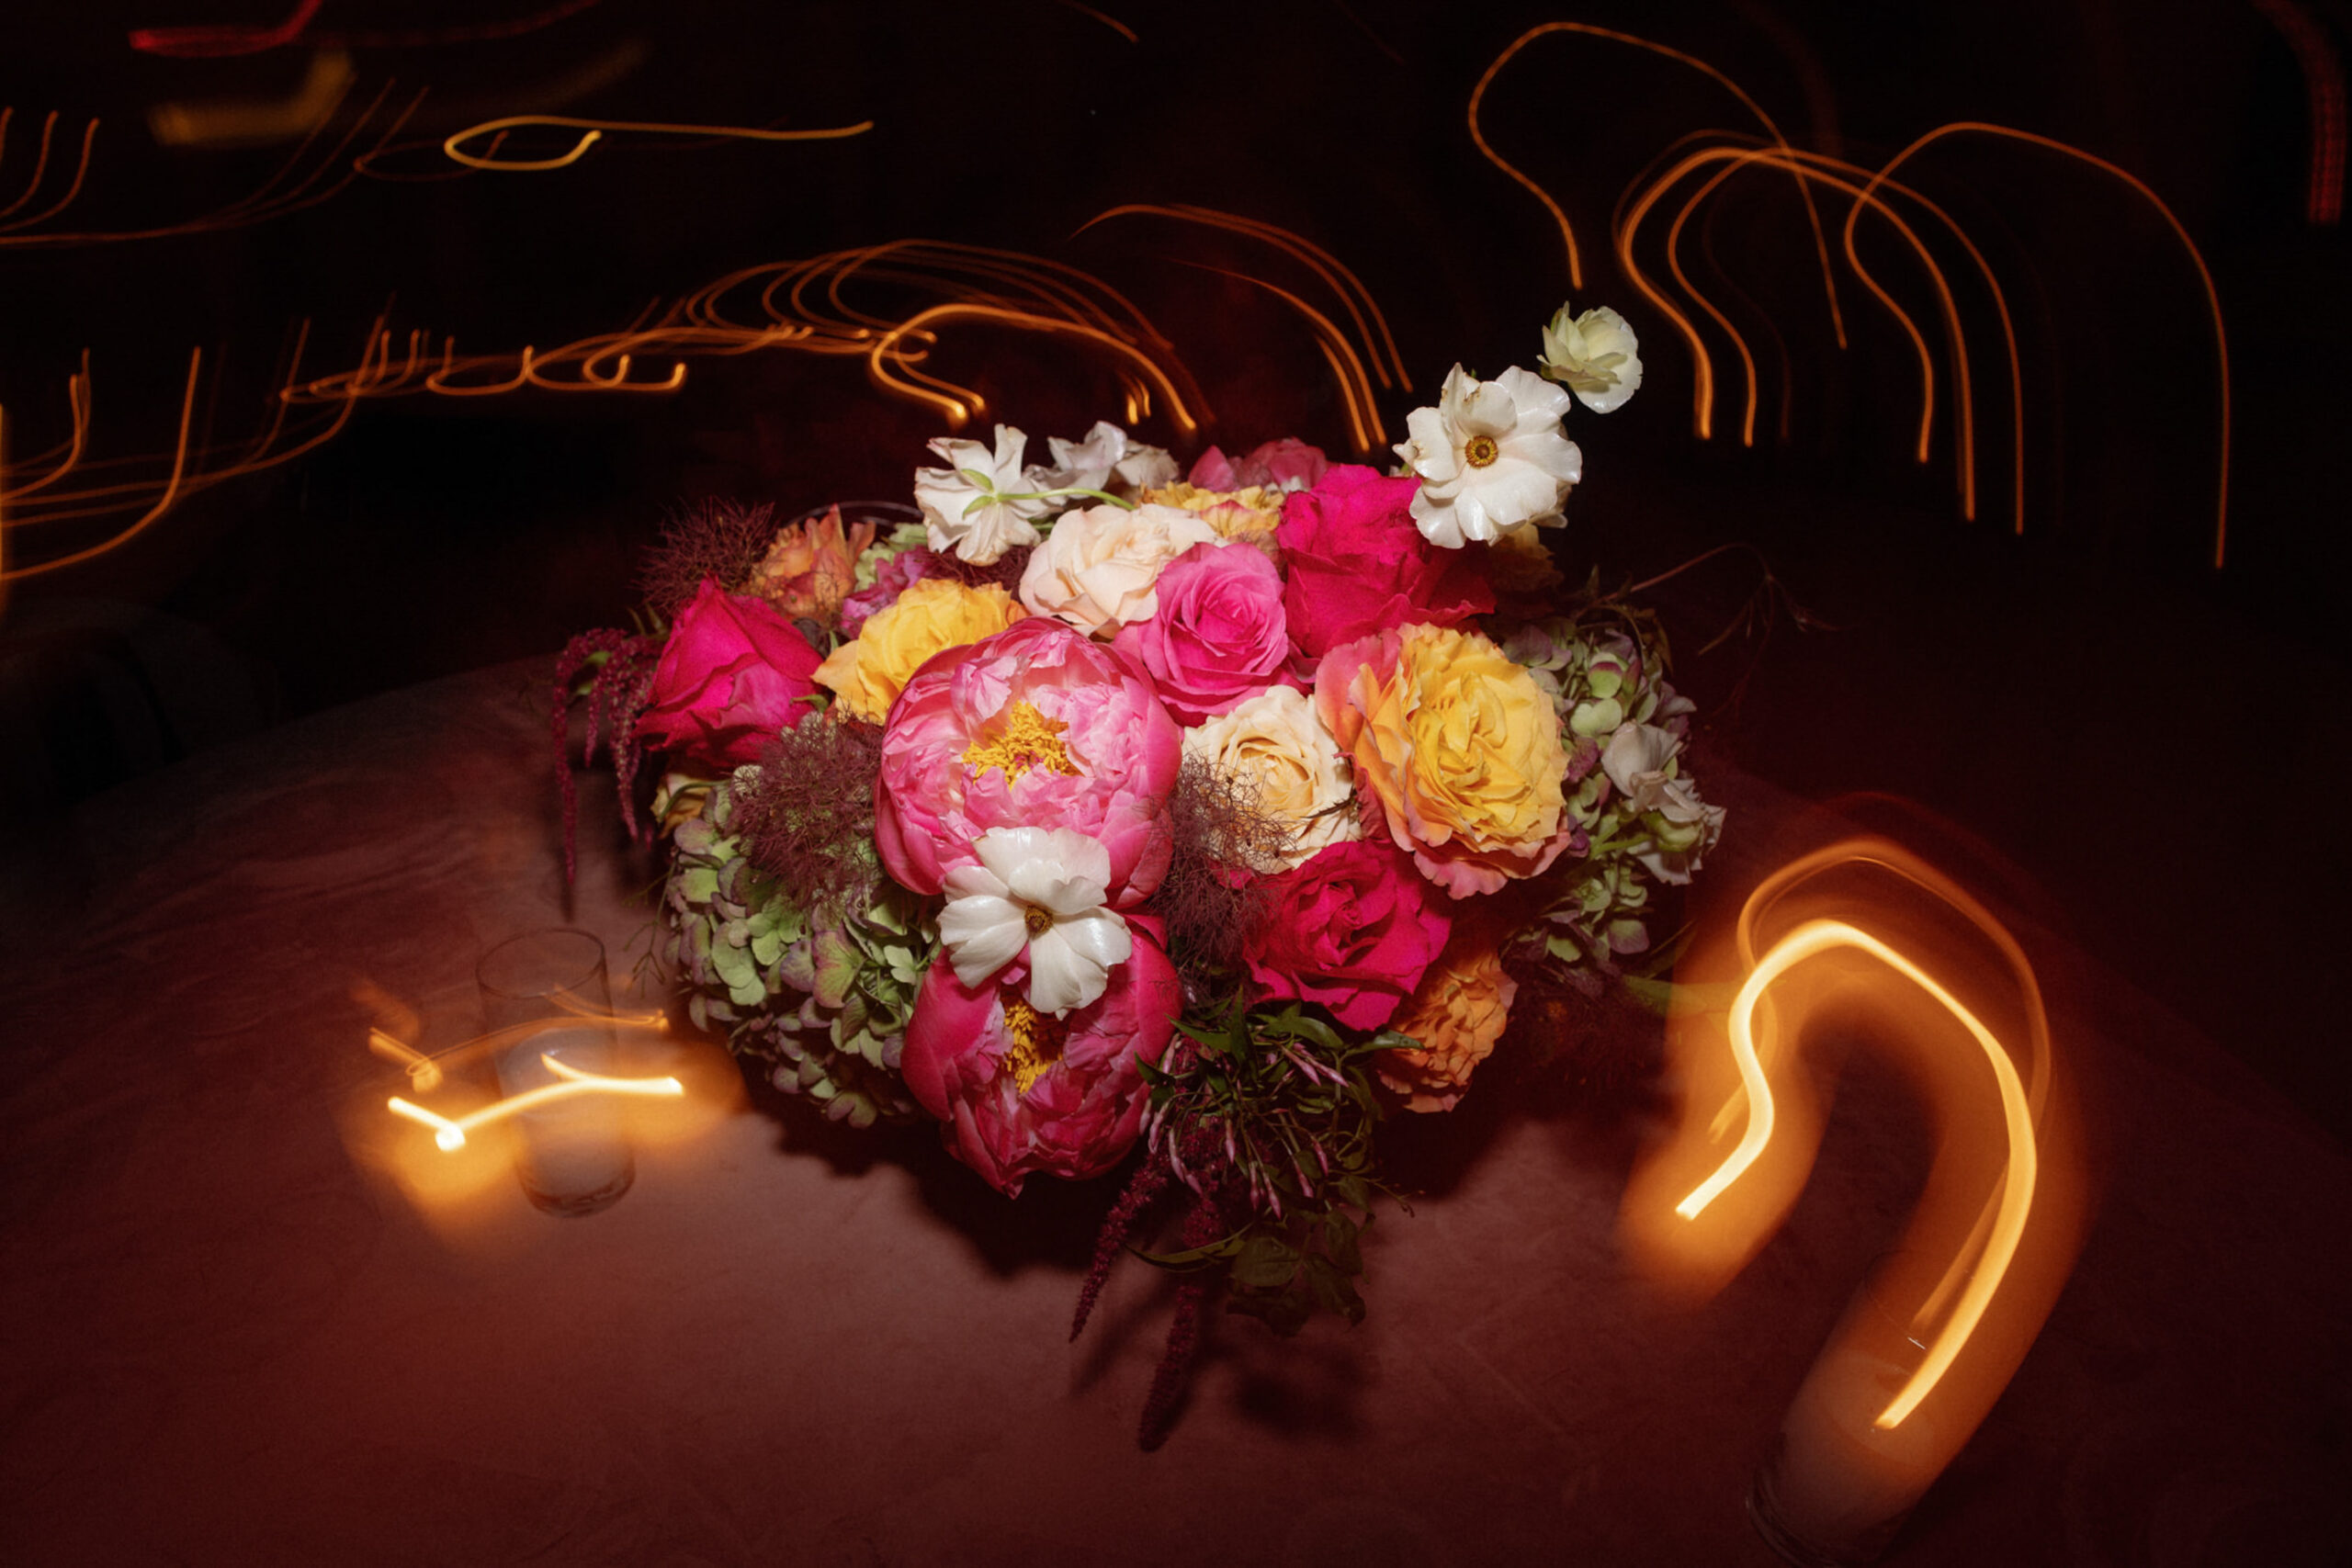 Floral arrangement at wedding reception shutter drag